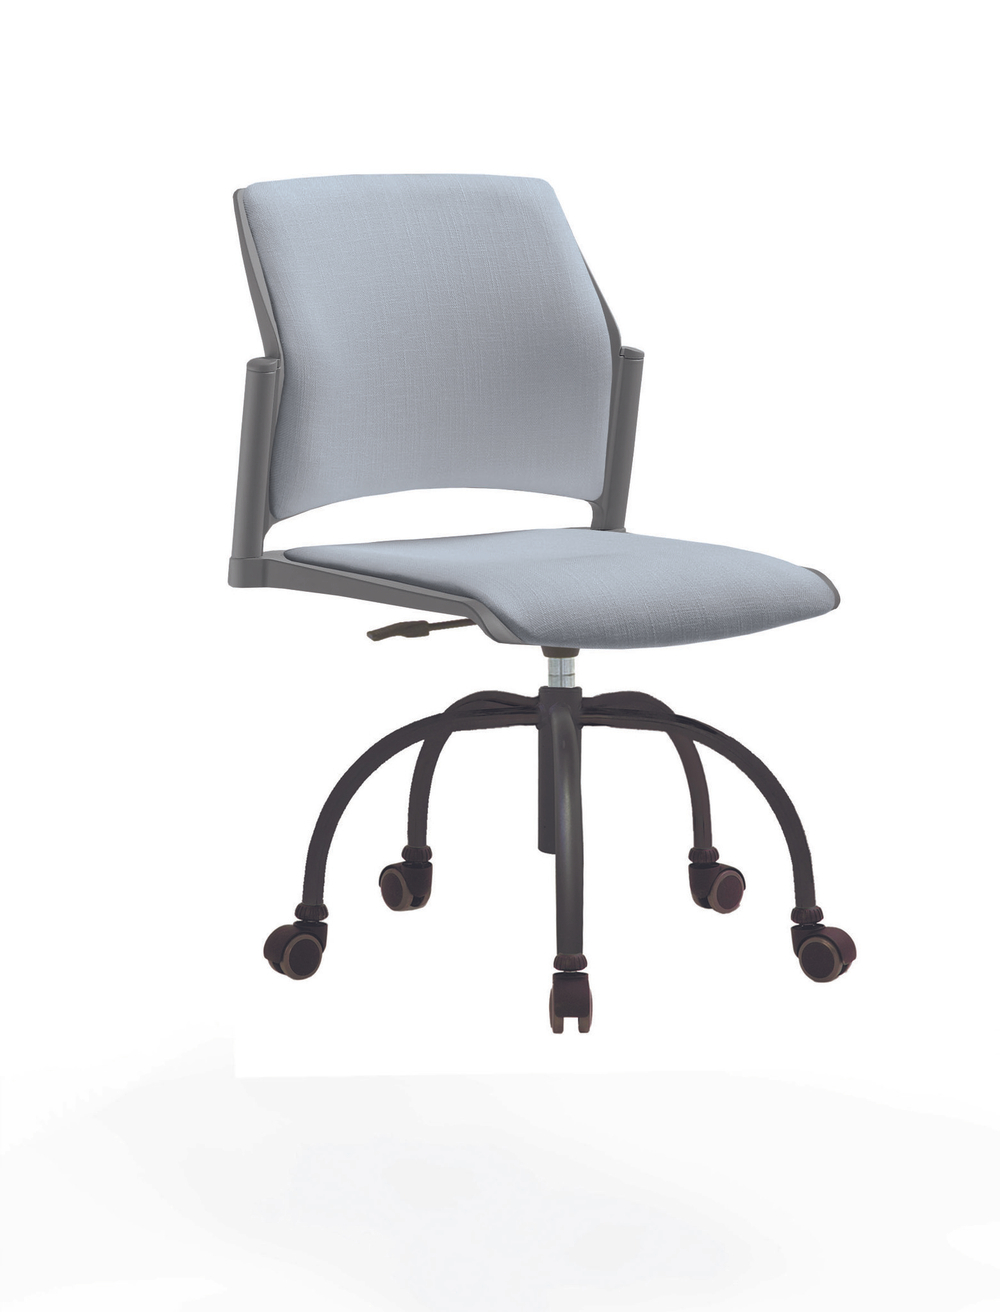 Кресло Rewind каркас черный, пластик серый, база паук краска черная, без подлокотников, сиденье и спинка серо-голубые